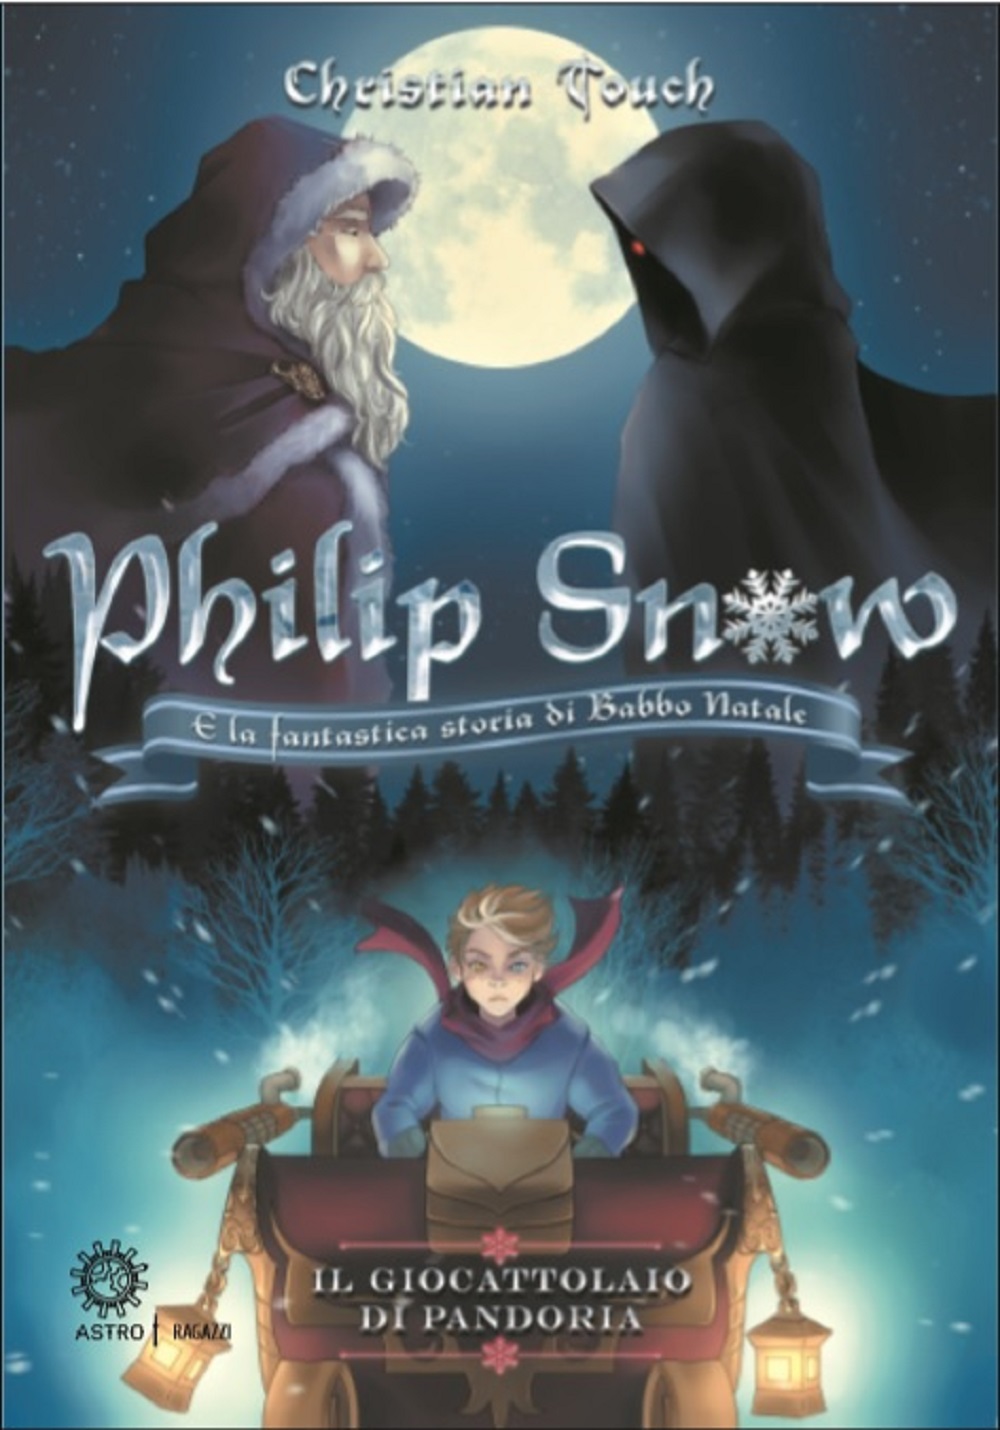 Philip Snow e la fantastica storia di Babbo Natale. Il giocattolaio di Pandoria